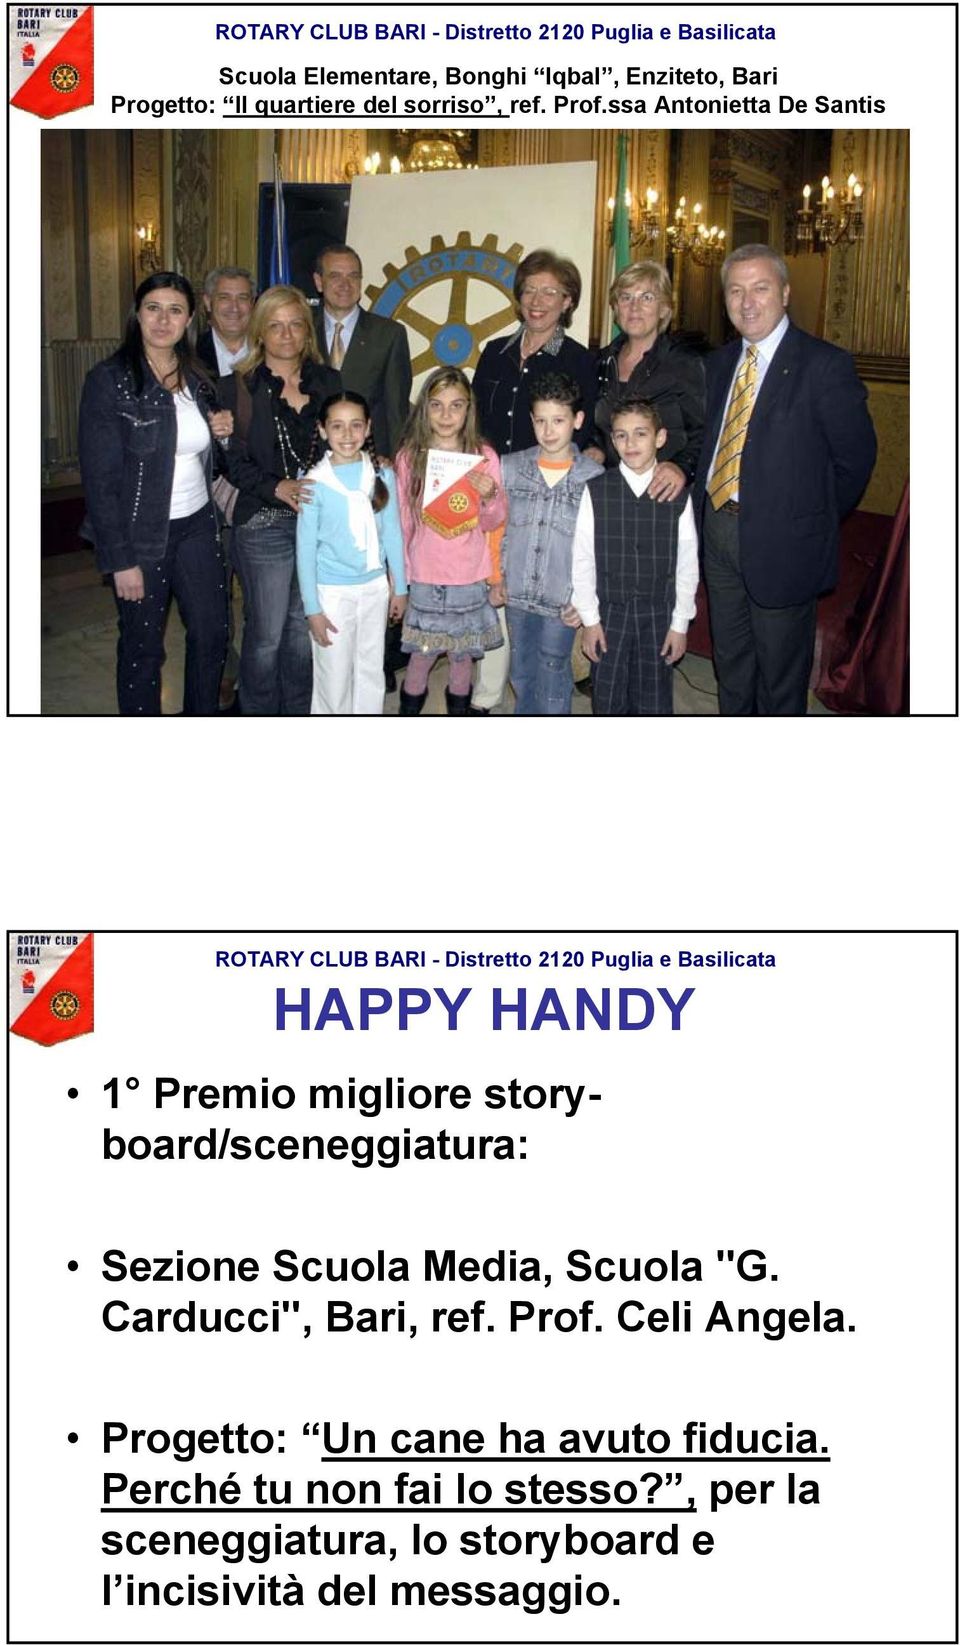 Media, Scuola "G. Carducci", Bari, ref. Prof. Celi Angela.